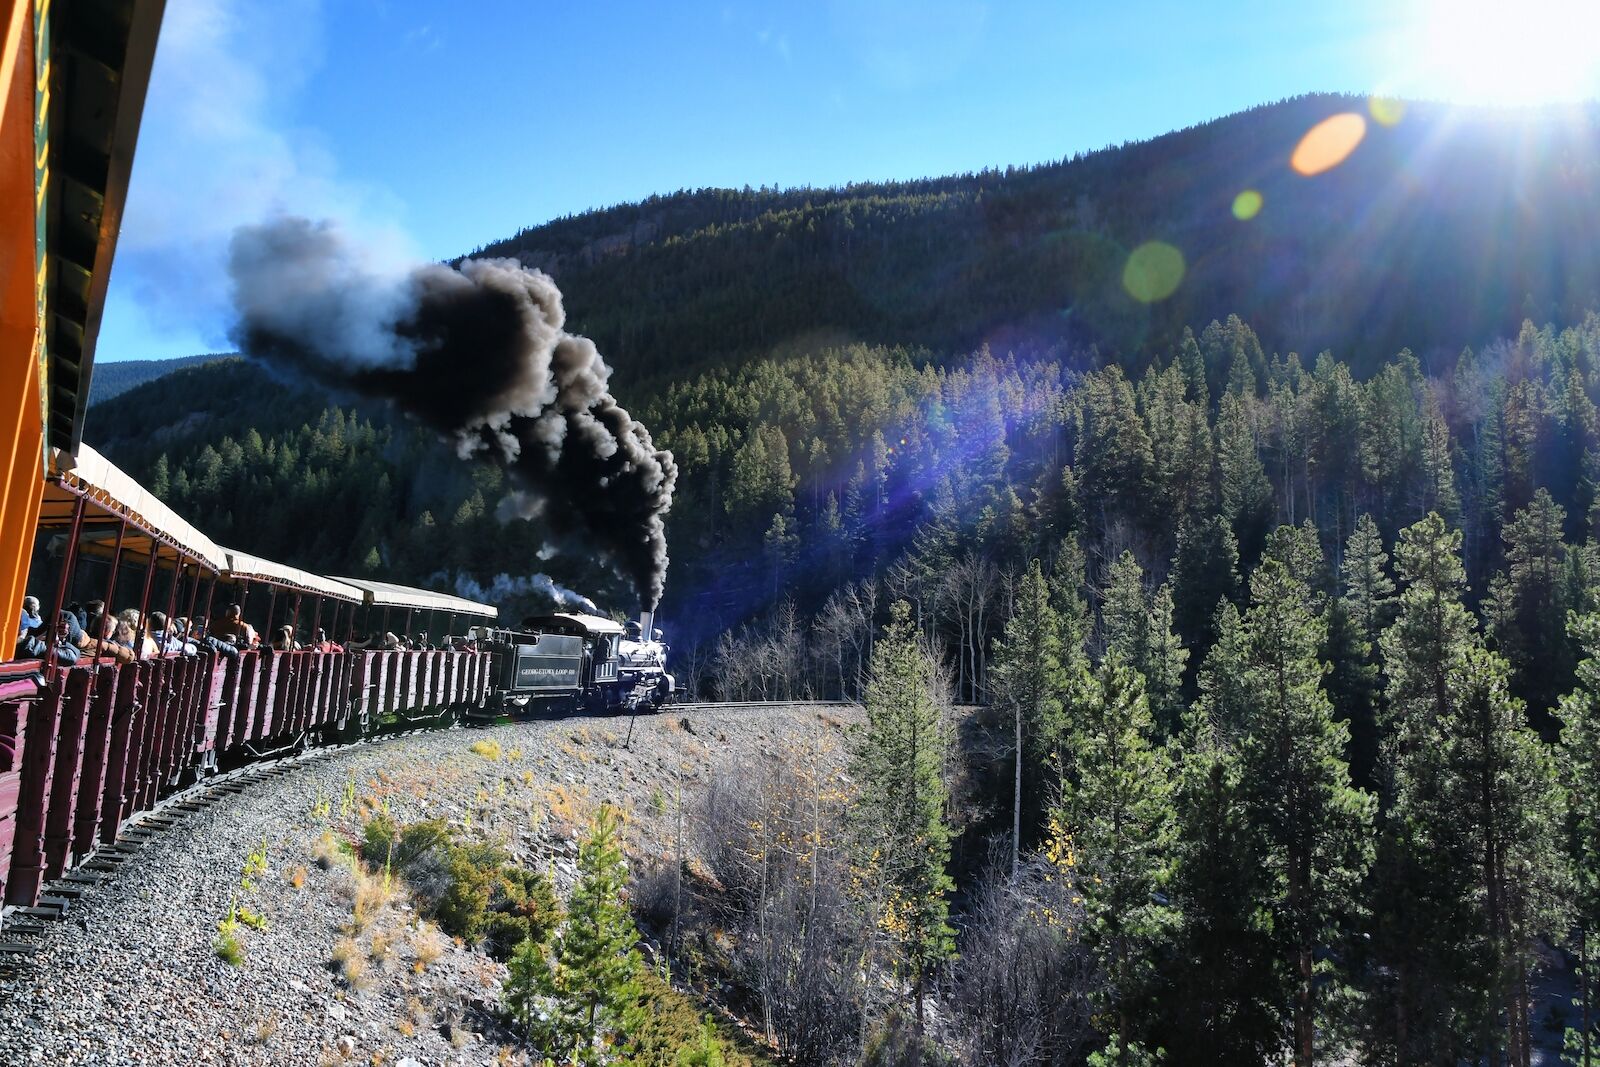 Georgetown Loop Railroad steam train in Colorado